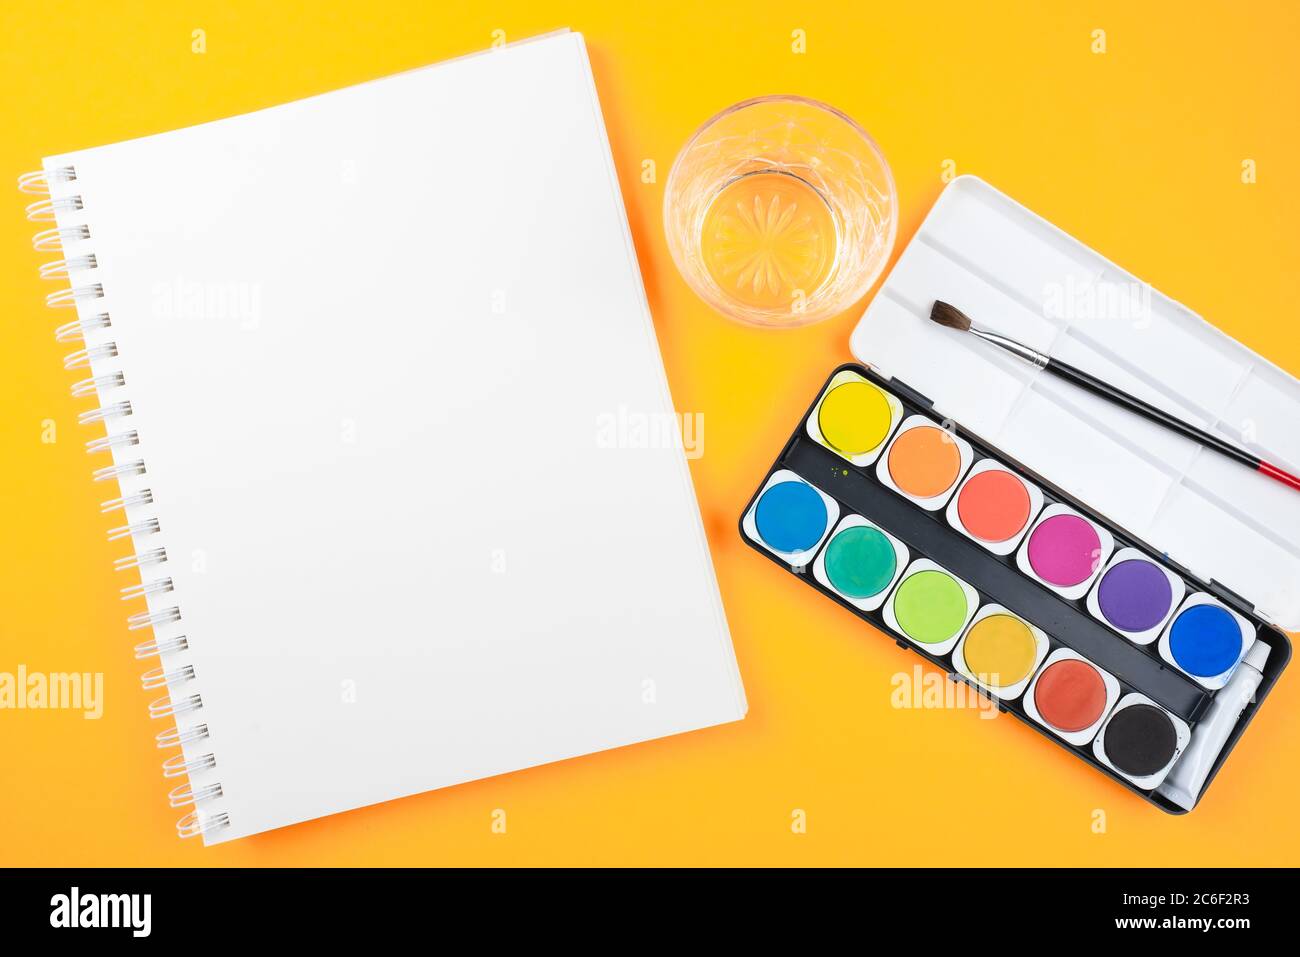 Oben Ansicht von Aquarellpaintbox, Pinsel, Skizzenbuch und Glas Wasser auf orangem Hintergrund, Malerei mit Aquarellen und kreativ sein Stockfoto